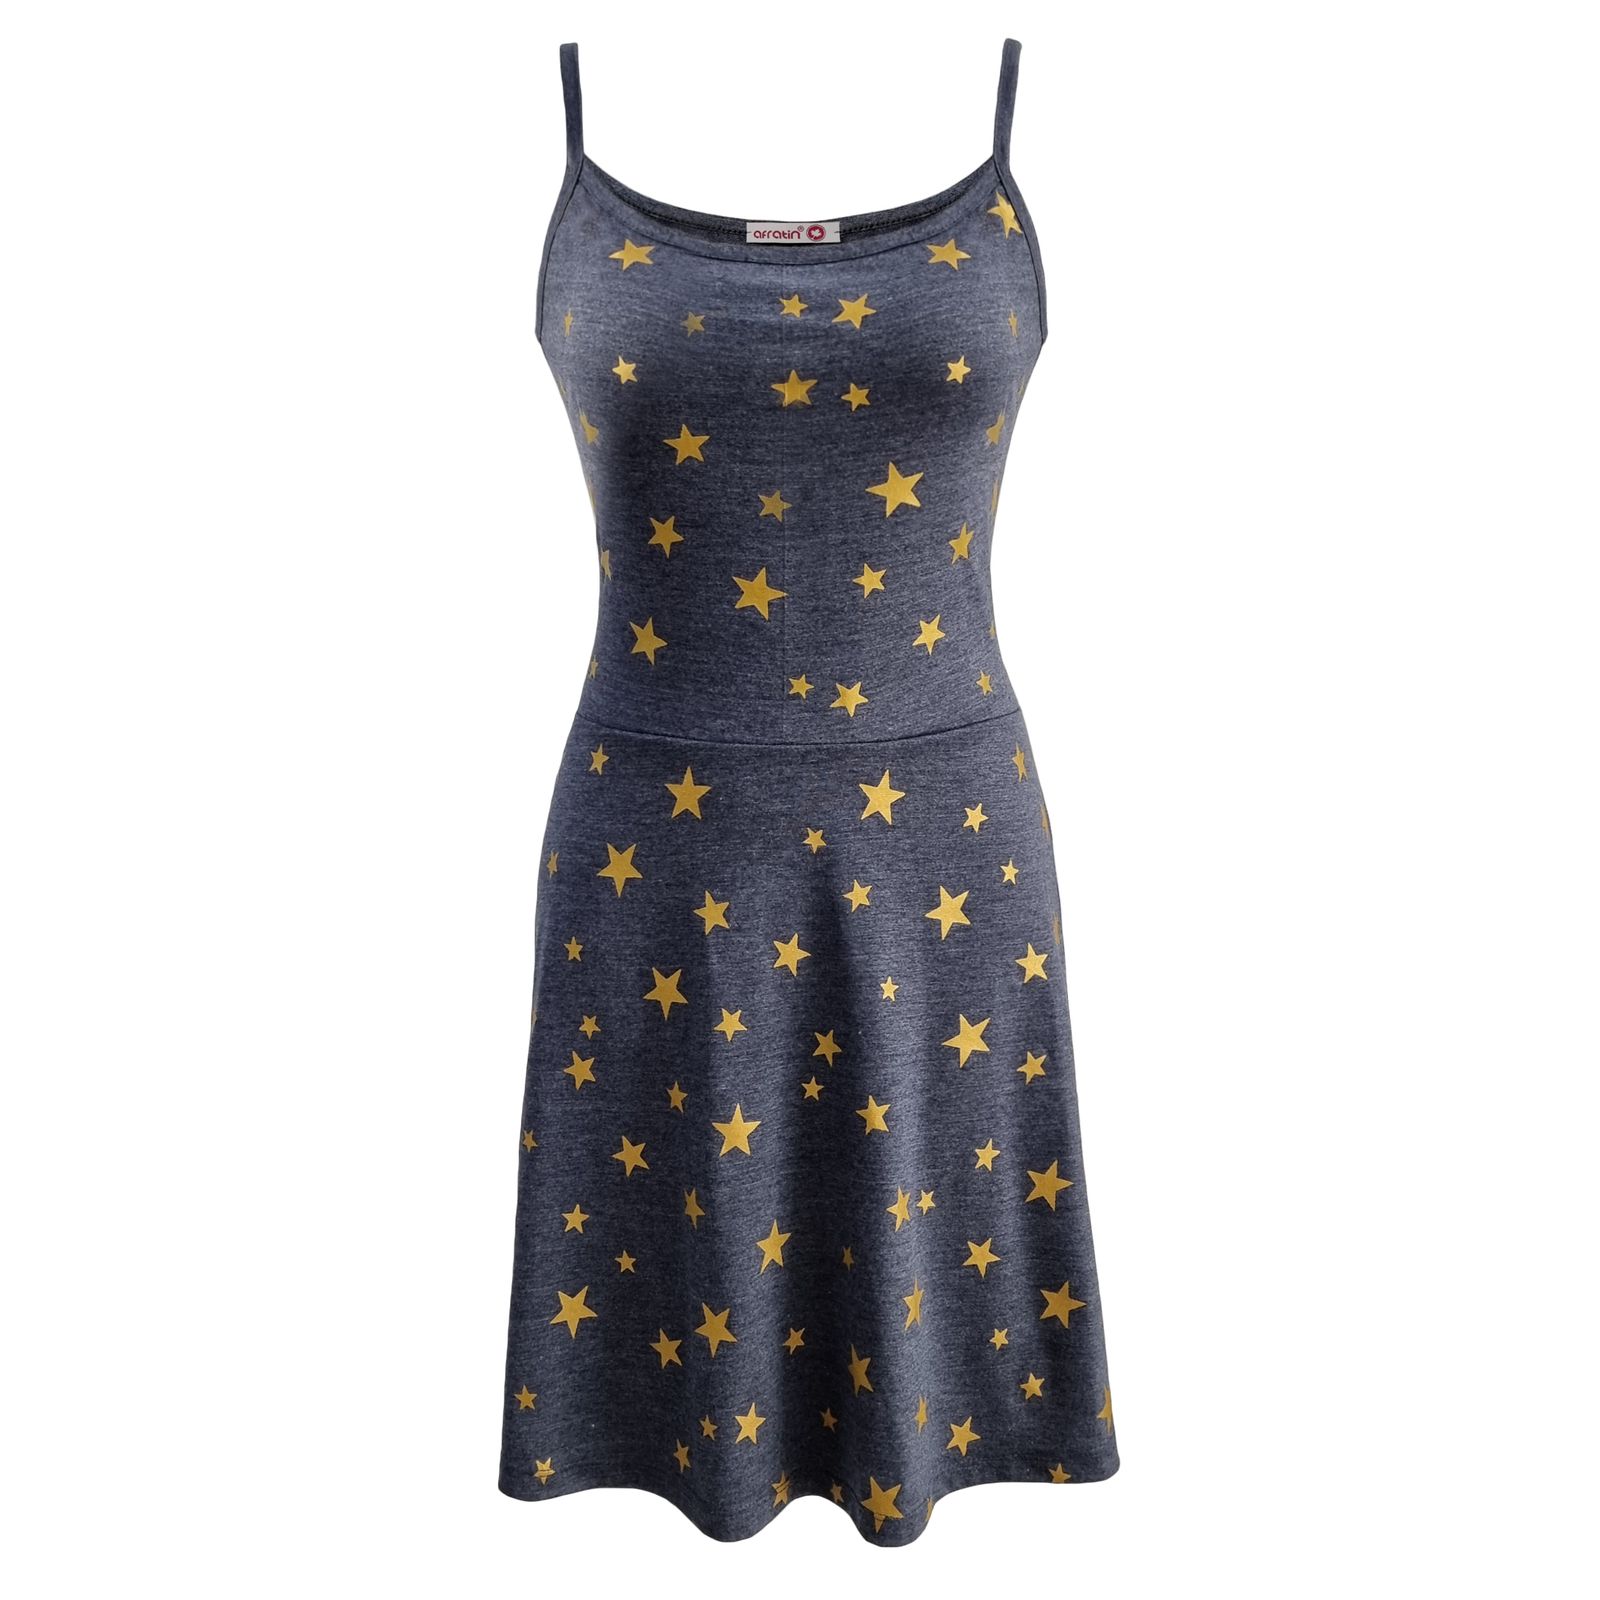 پیراهن زنانه افراتین مدل ستاره کد 9531 رنگ طوسی -  - 1